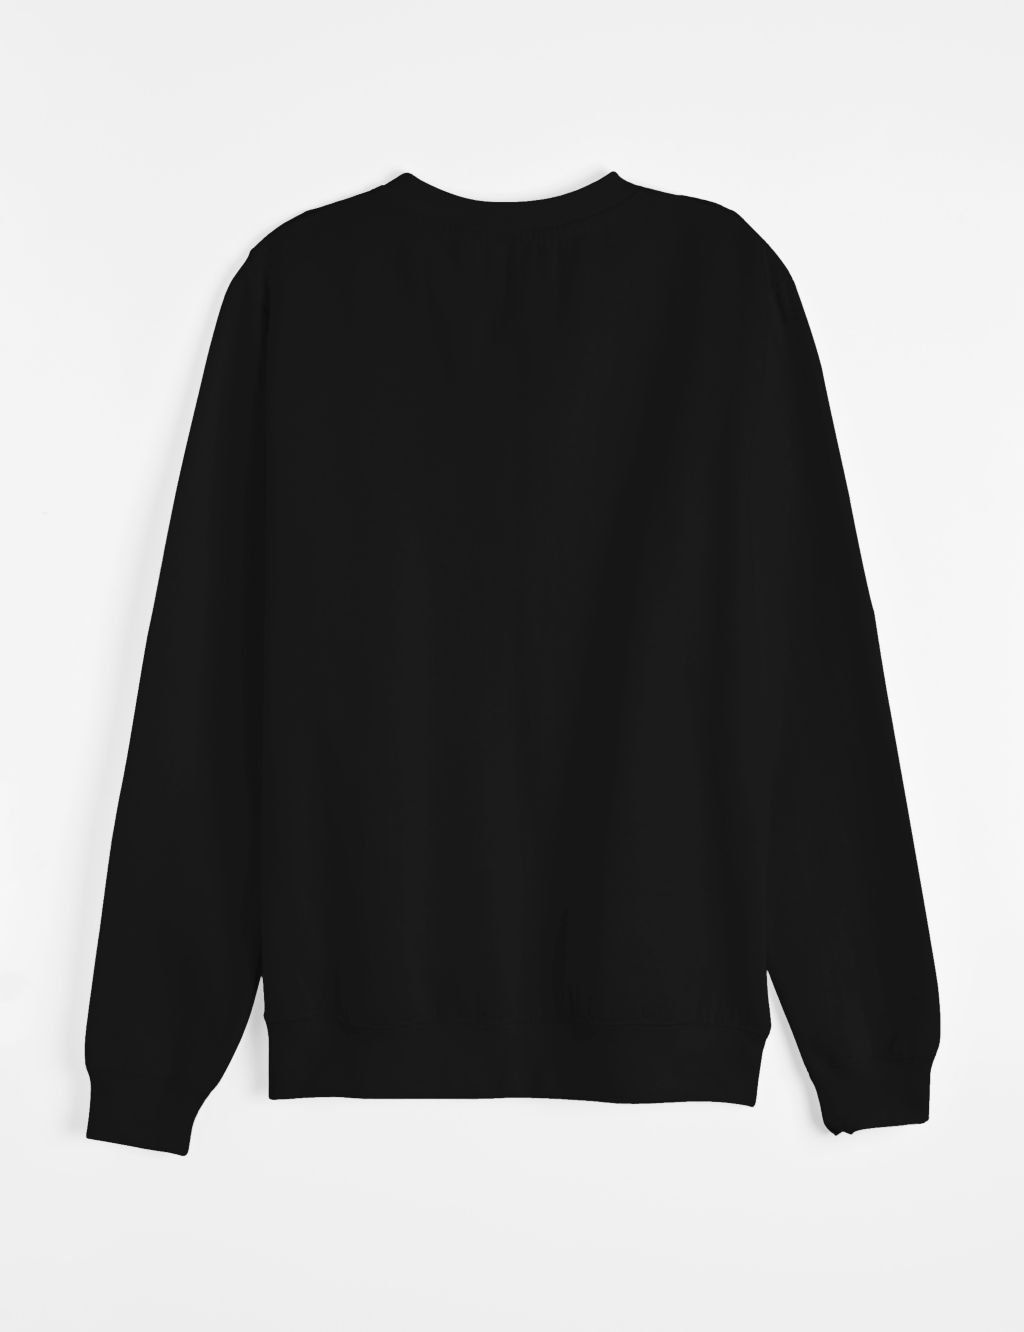 Personalised Groom Sweatshirt 2 of 3